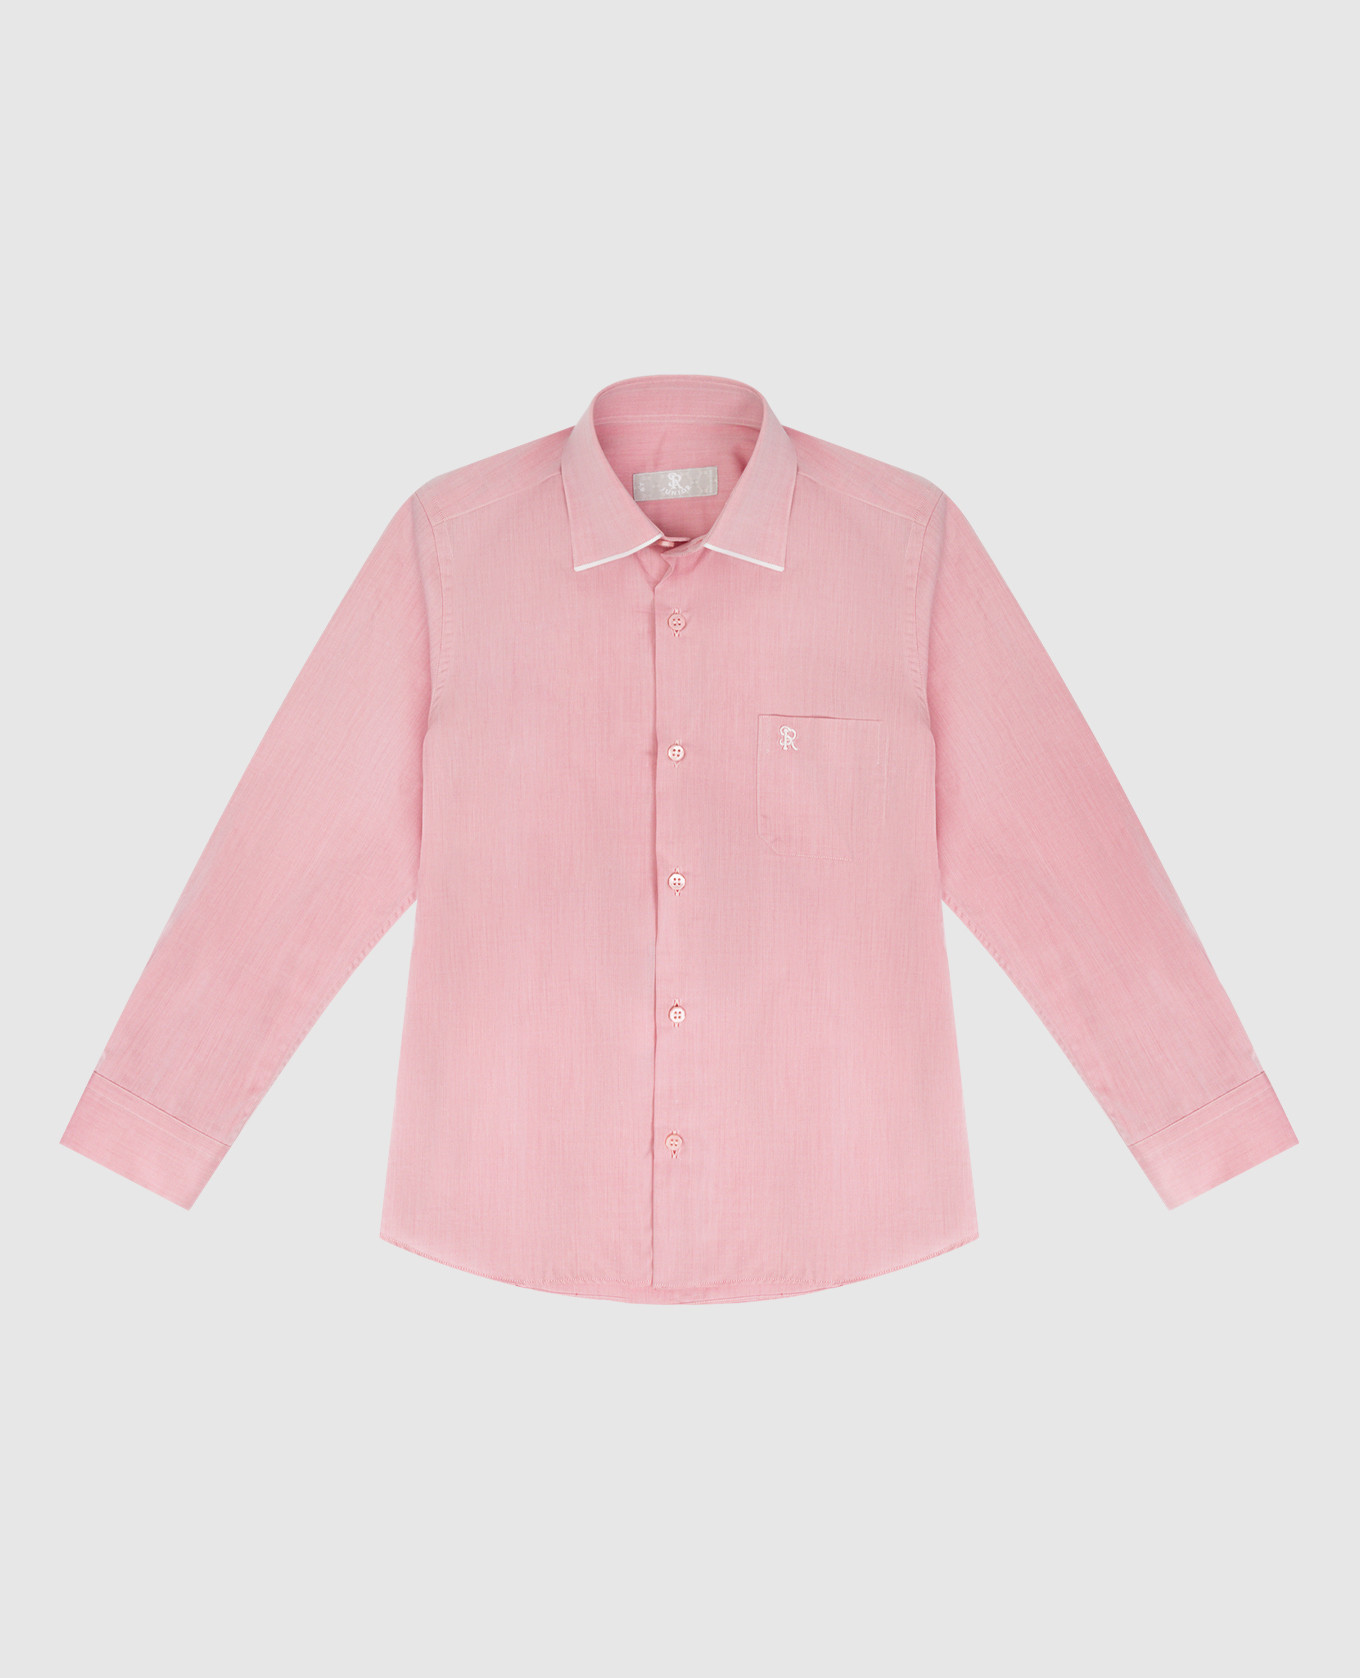 Детская розовая рубашка в вышивкой логотипа